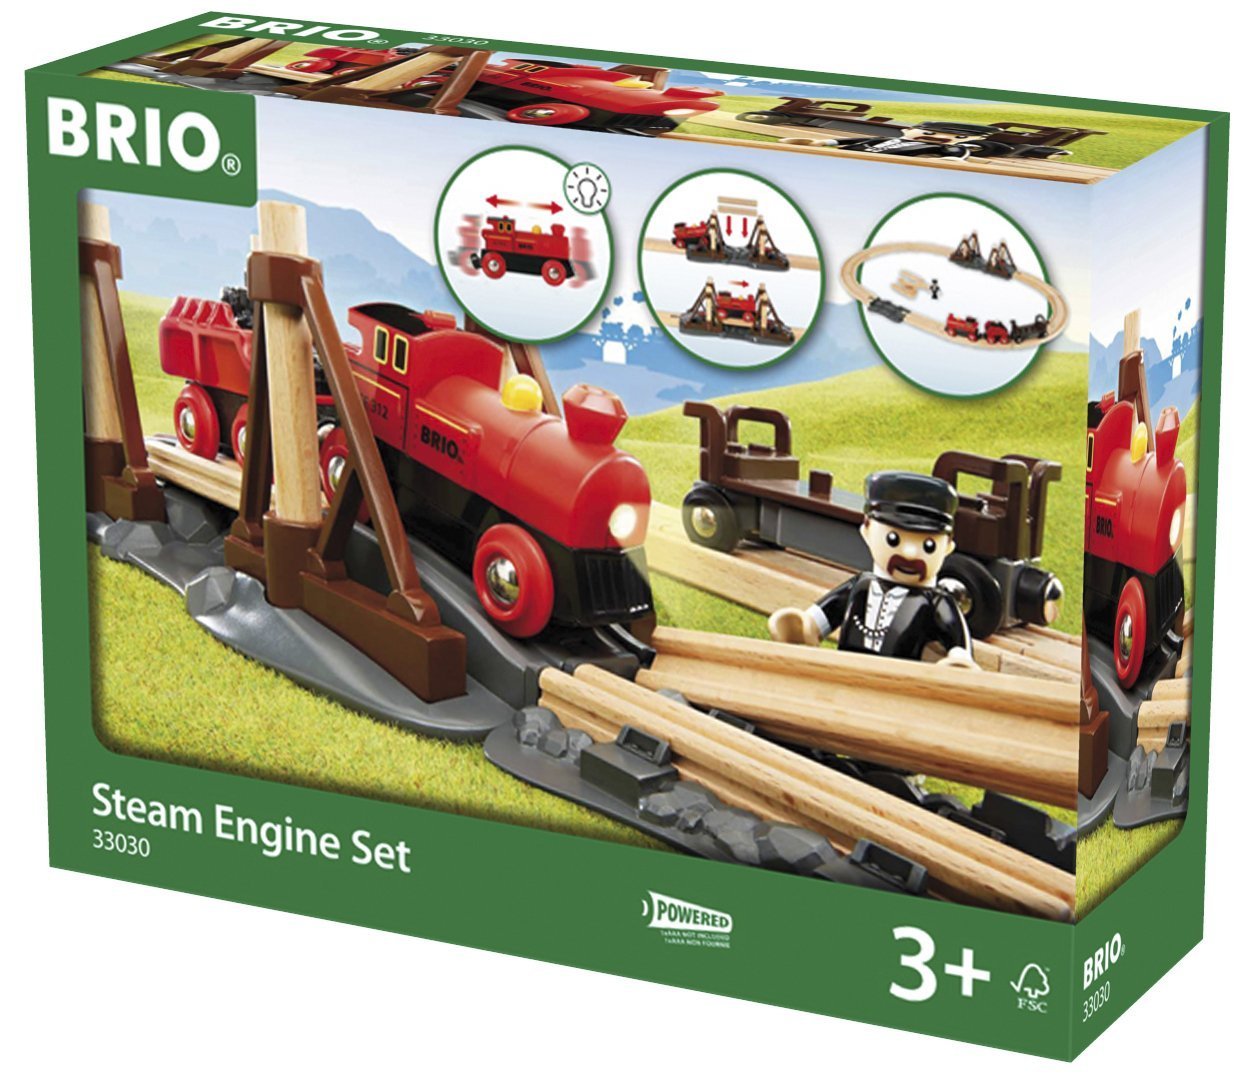 BRIO Steam Engine Set